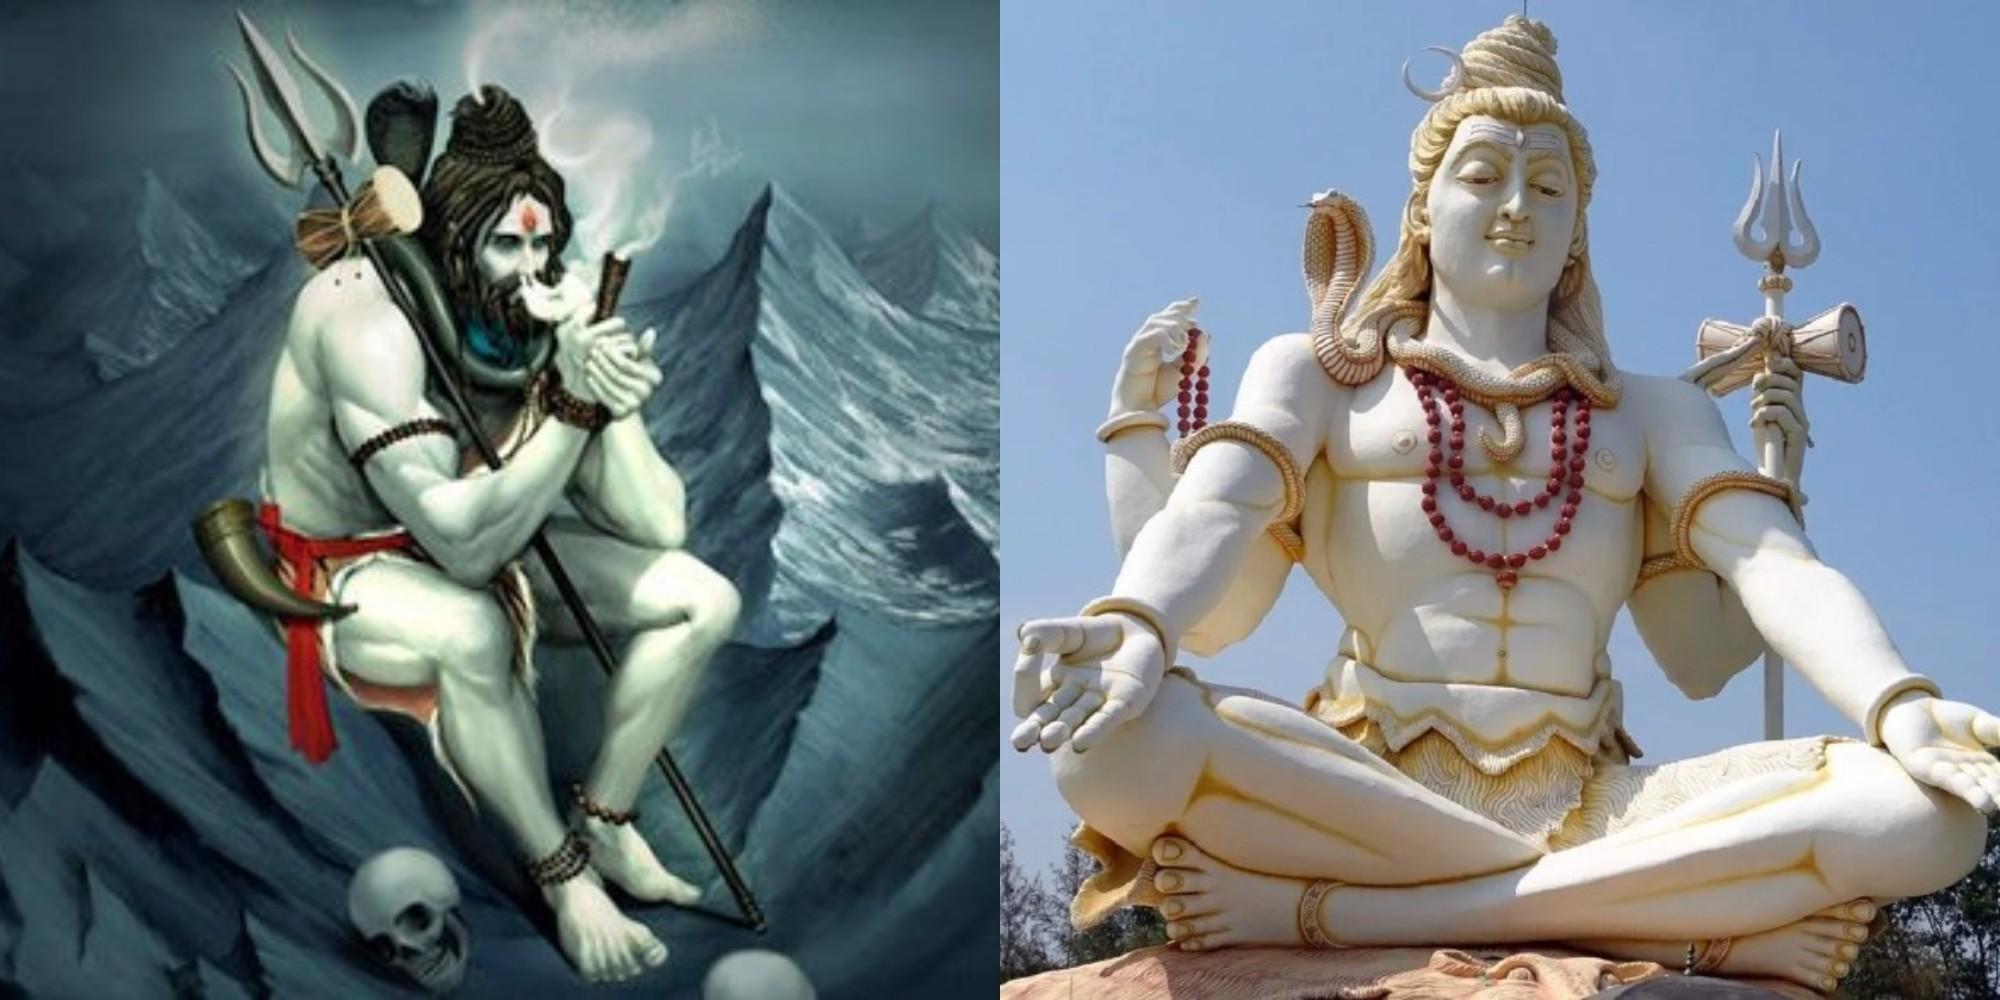 कभी सोचा है कि भगवान शिव को भांग से क्यों जोड़ा जाता है? जानिए इसके पीछे की दिलचस्प कहानी